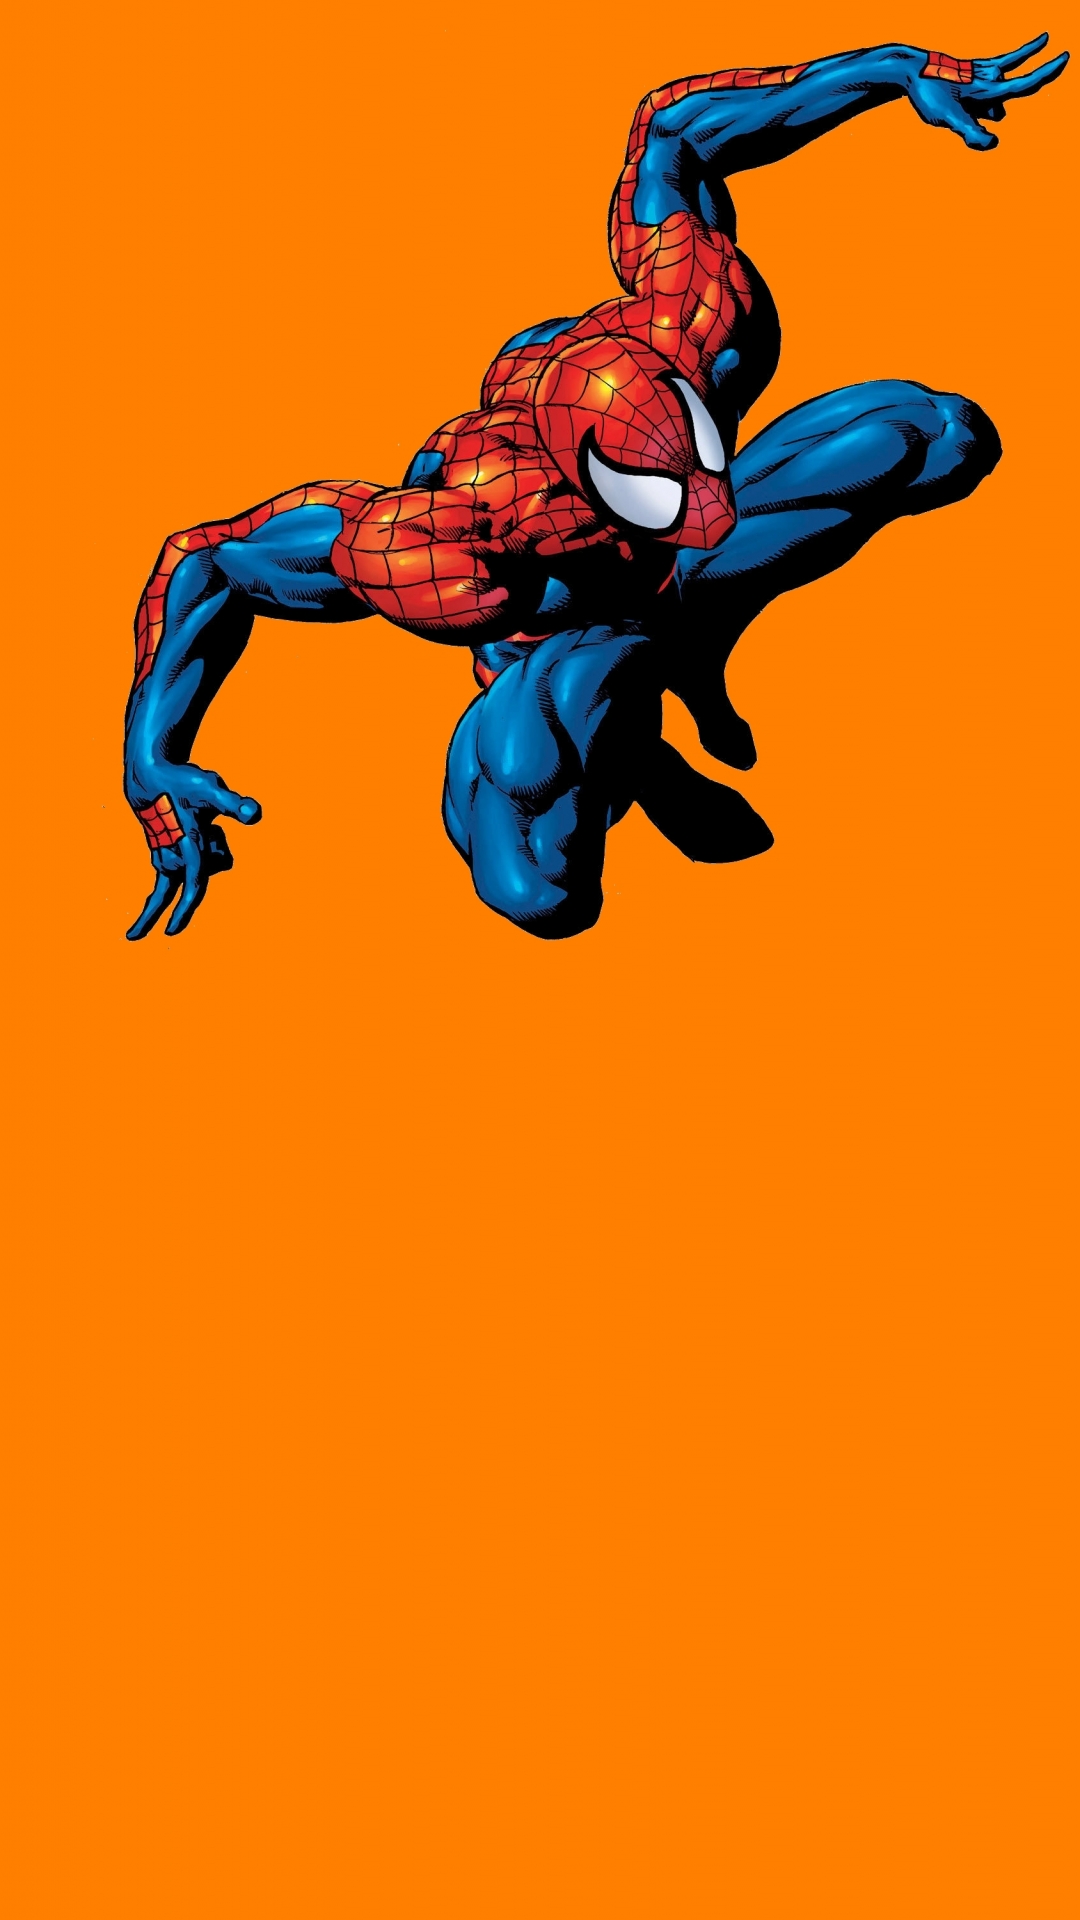 spiderman fondos de pantalla hd,personaje de ficción,superhéroe,hombre araña,héroe,ficción